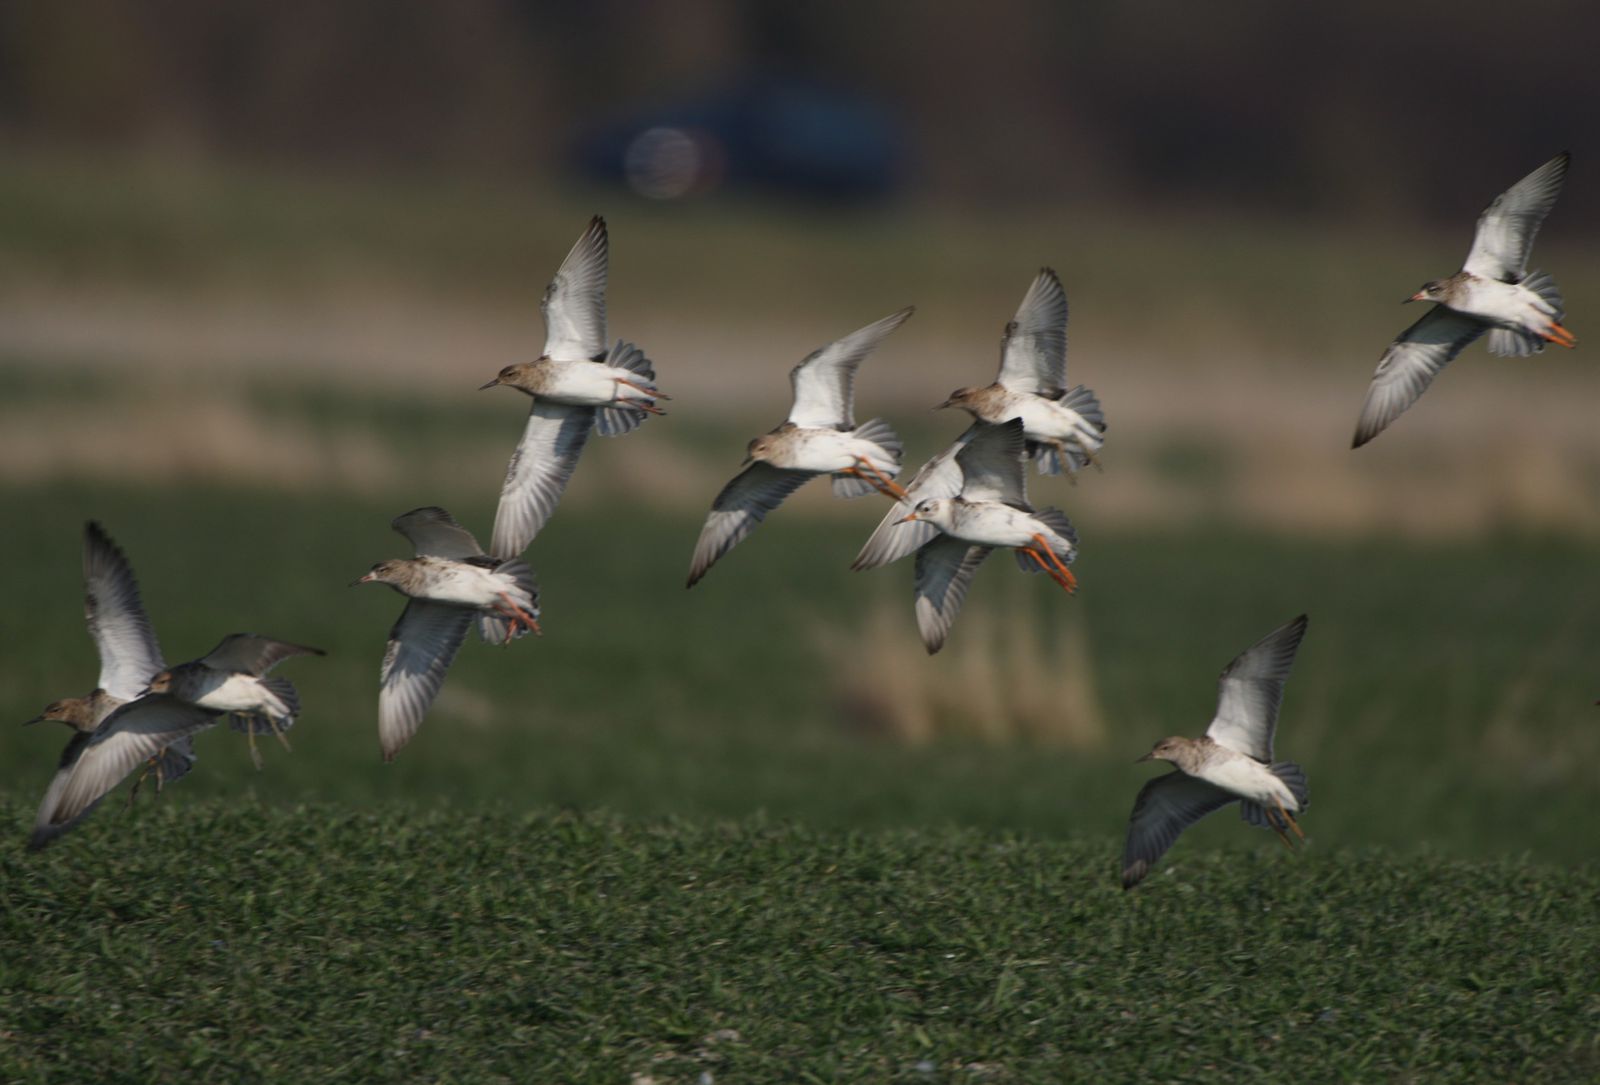 Combattants variés en vol photo d'oiseaux de Picardie hâble d'Ault Benoit Henrion